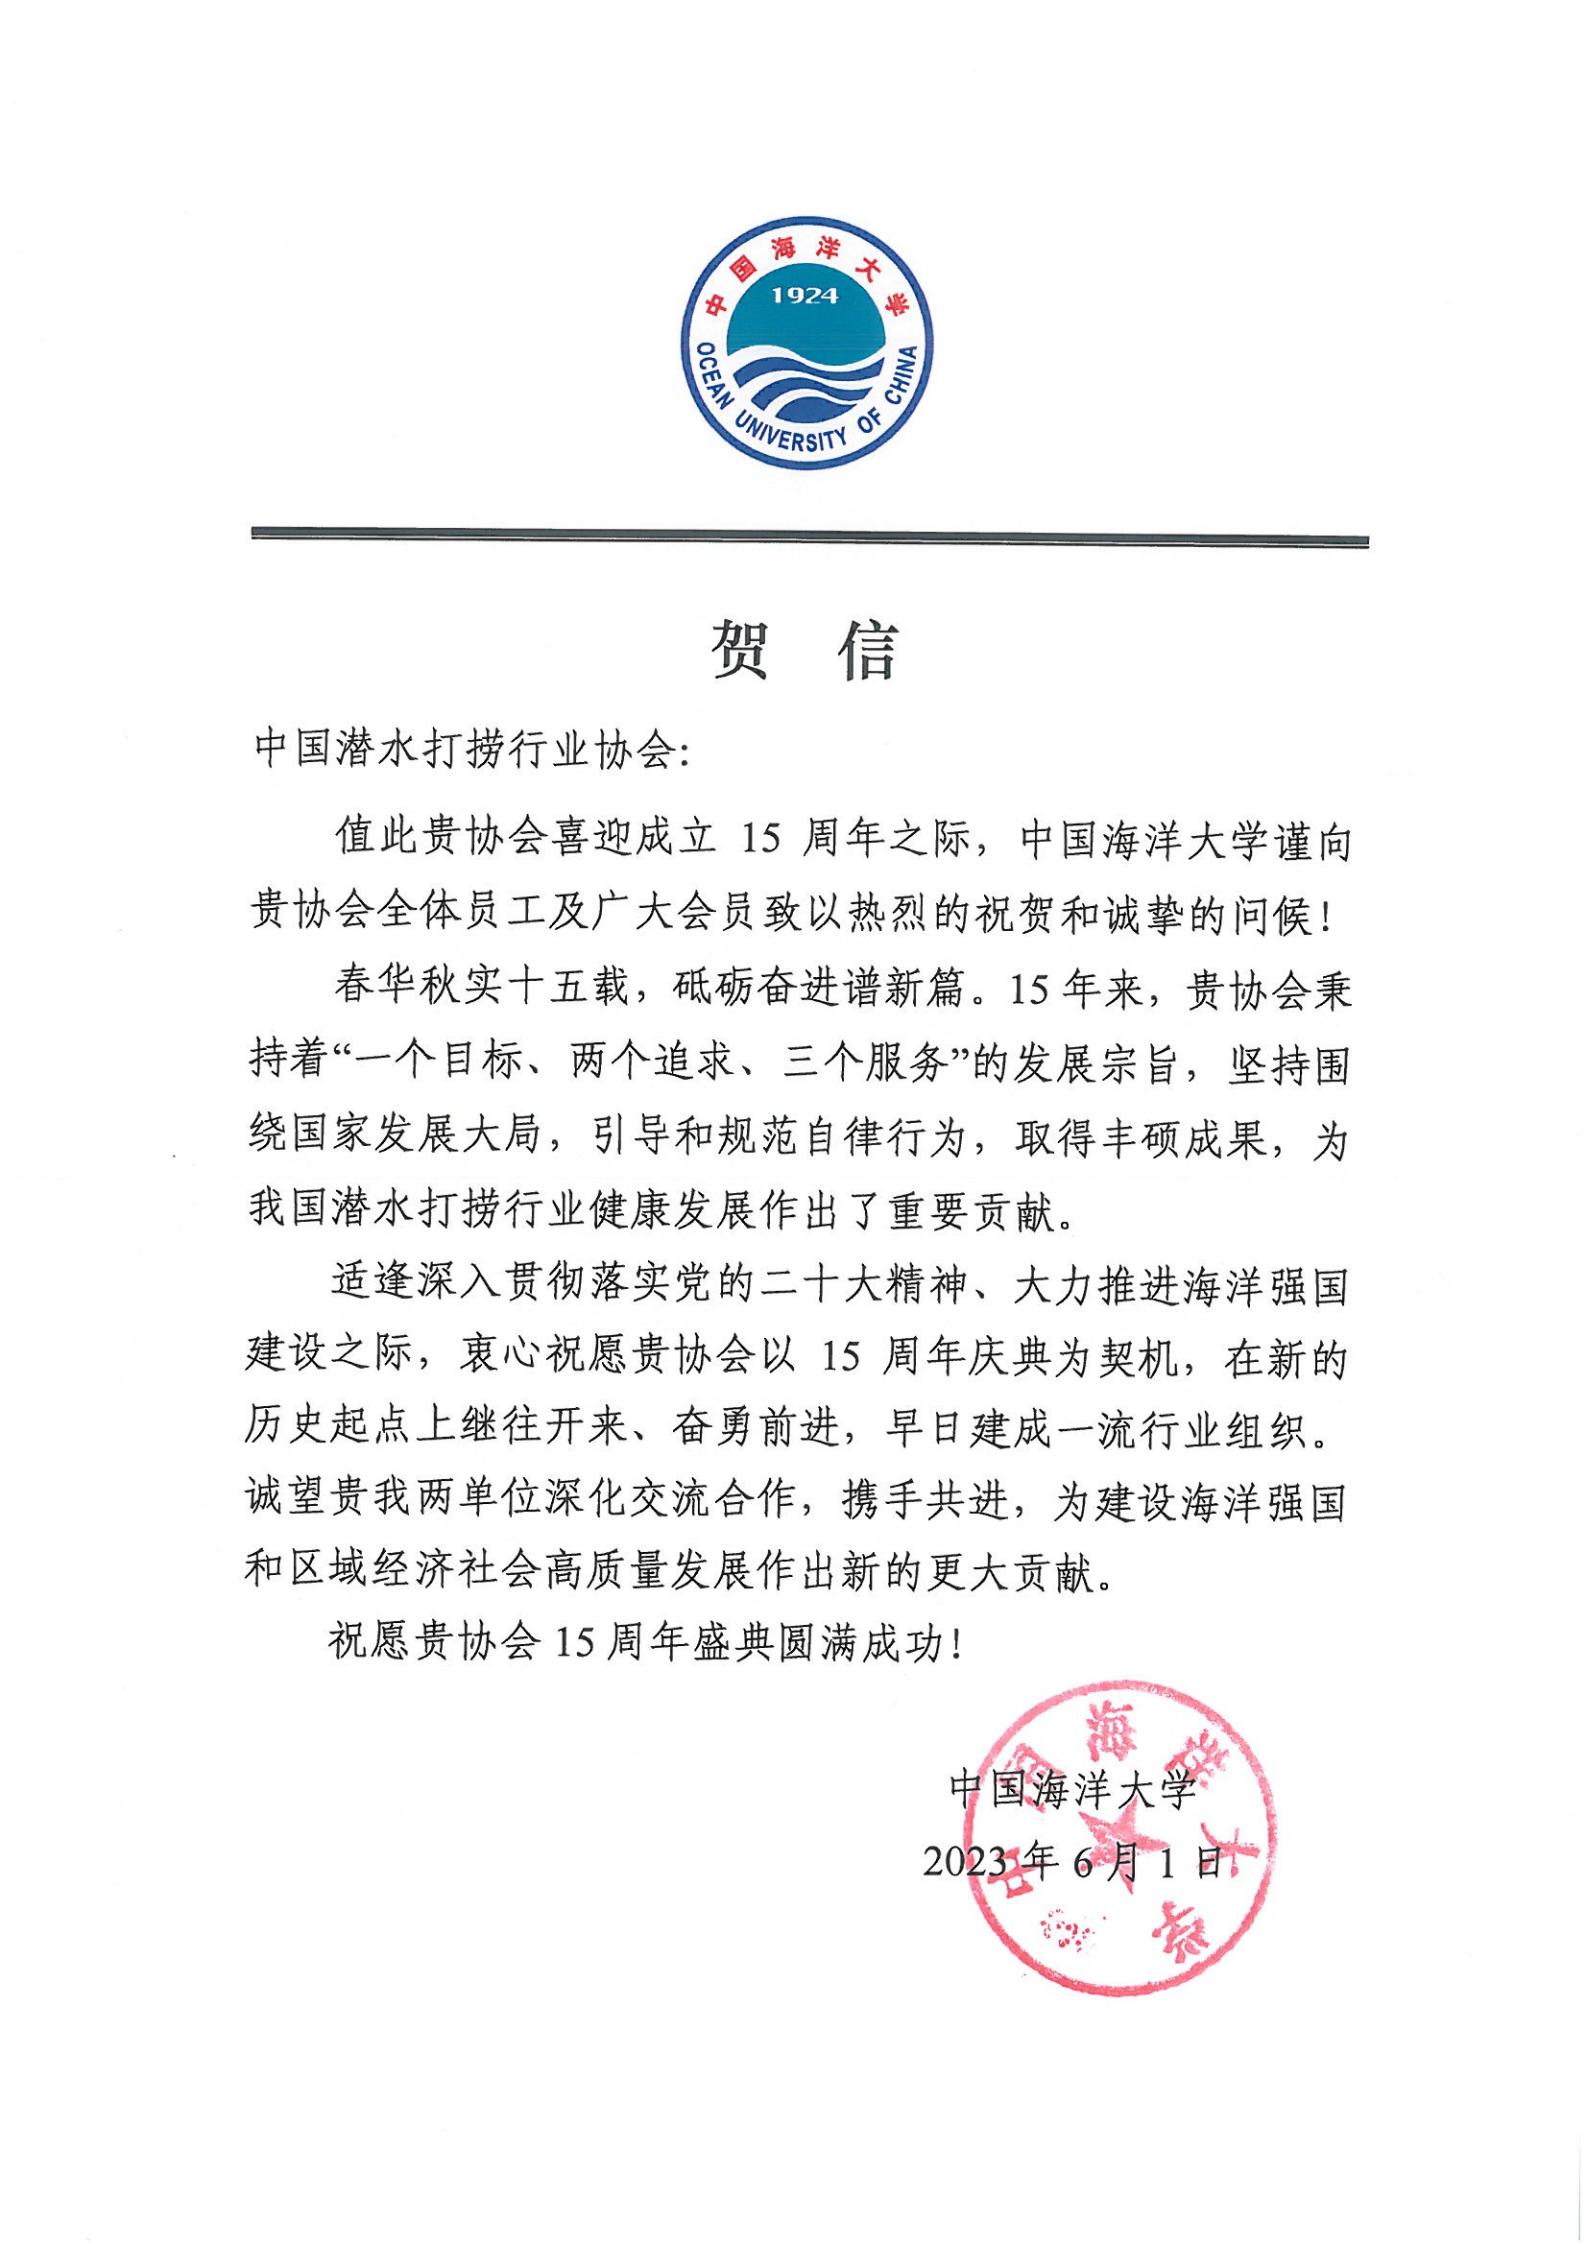 中国海洋大学来信祝贺协会成立十五周年_00.jpg